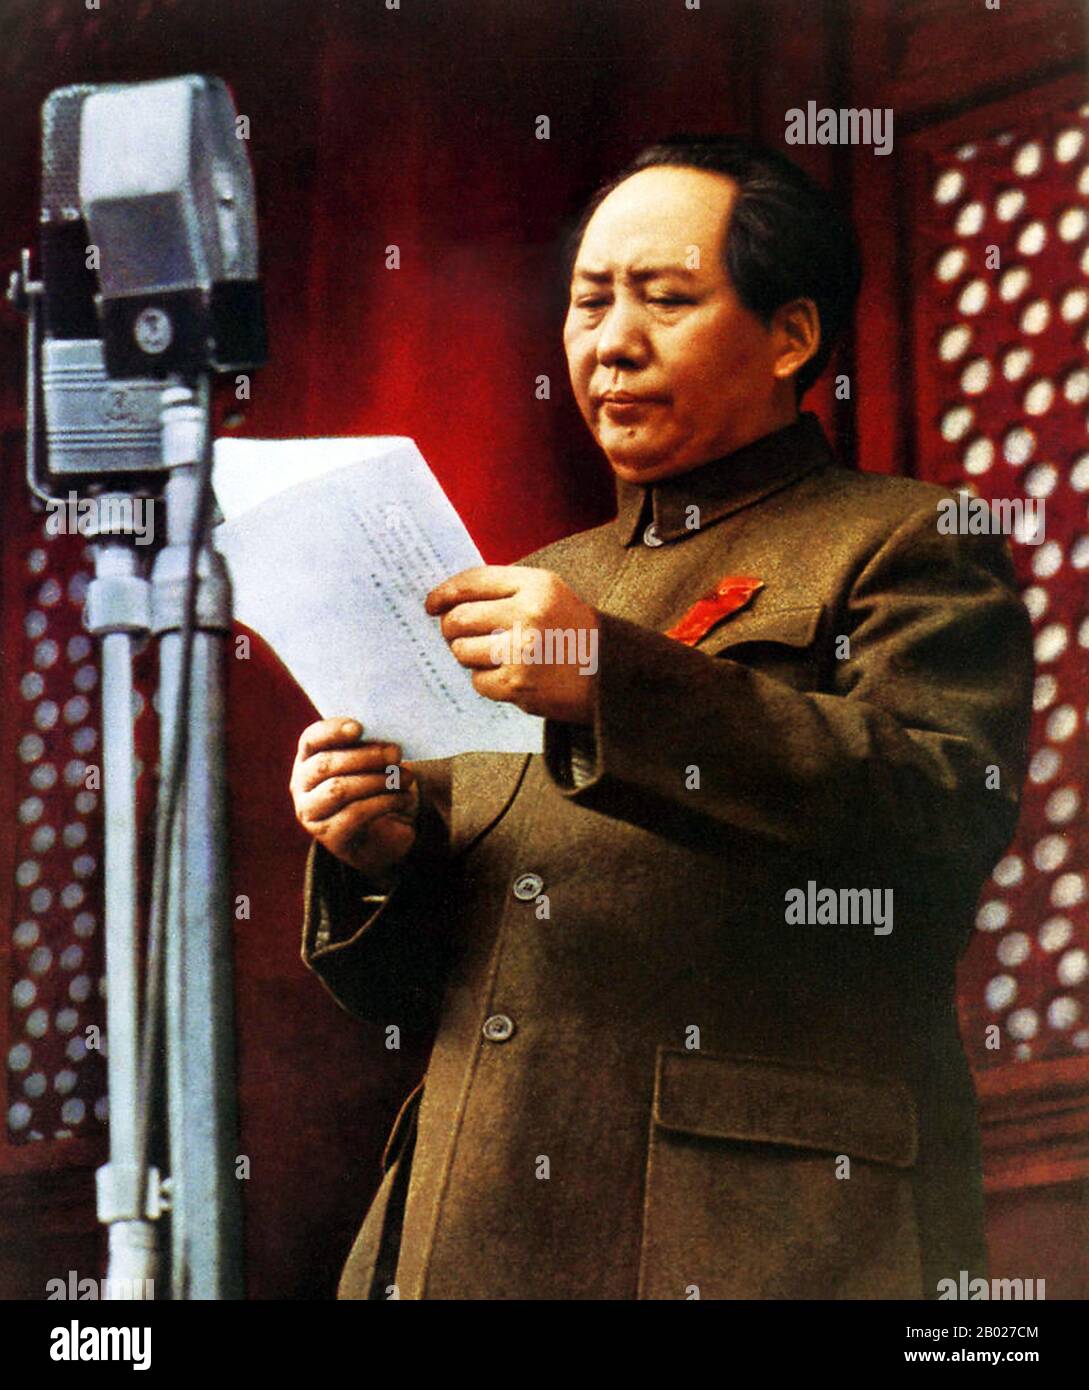 Le costume moderne de tunique chinoise est un style de tenue masculine connu en Chine comme le costume de Zhongshan (chinois simplifié: 中山装; chinois traditionnel: 中山裝; pinyin: Zhōngshān zhuāng) (après Sun Yat-Sen), également connu en Occident comme le costume de Mao (après Mao Zedong). Sun Yat-sen a introduit le style peu de temps après la fondation de la République de Chine comme une forme de robe nationale, bien qu'avec une implication clairement politique et plus tard gouvernementale. Après la fin de la guerre civile chinoise et la création de la République Populaire de Chine en 1949, la poursuite est devenue largement portée par les hommes et le chef du gouvernement Banque D'Images